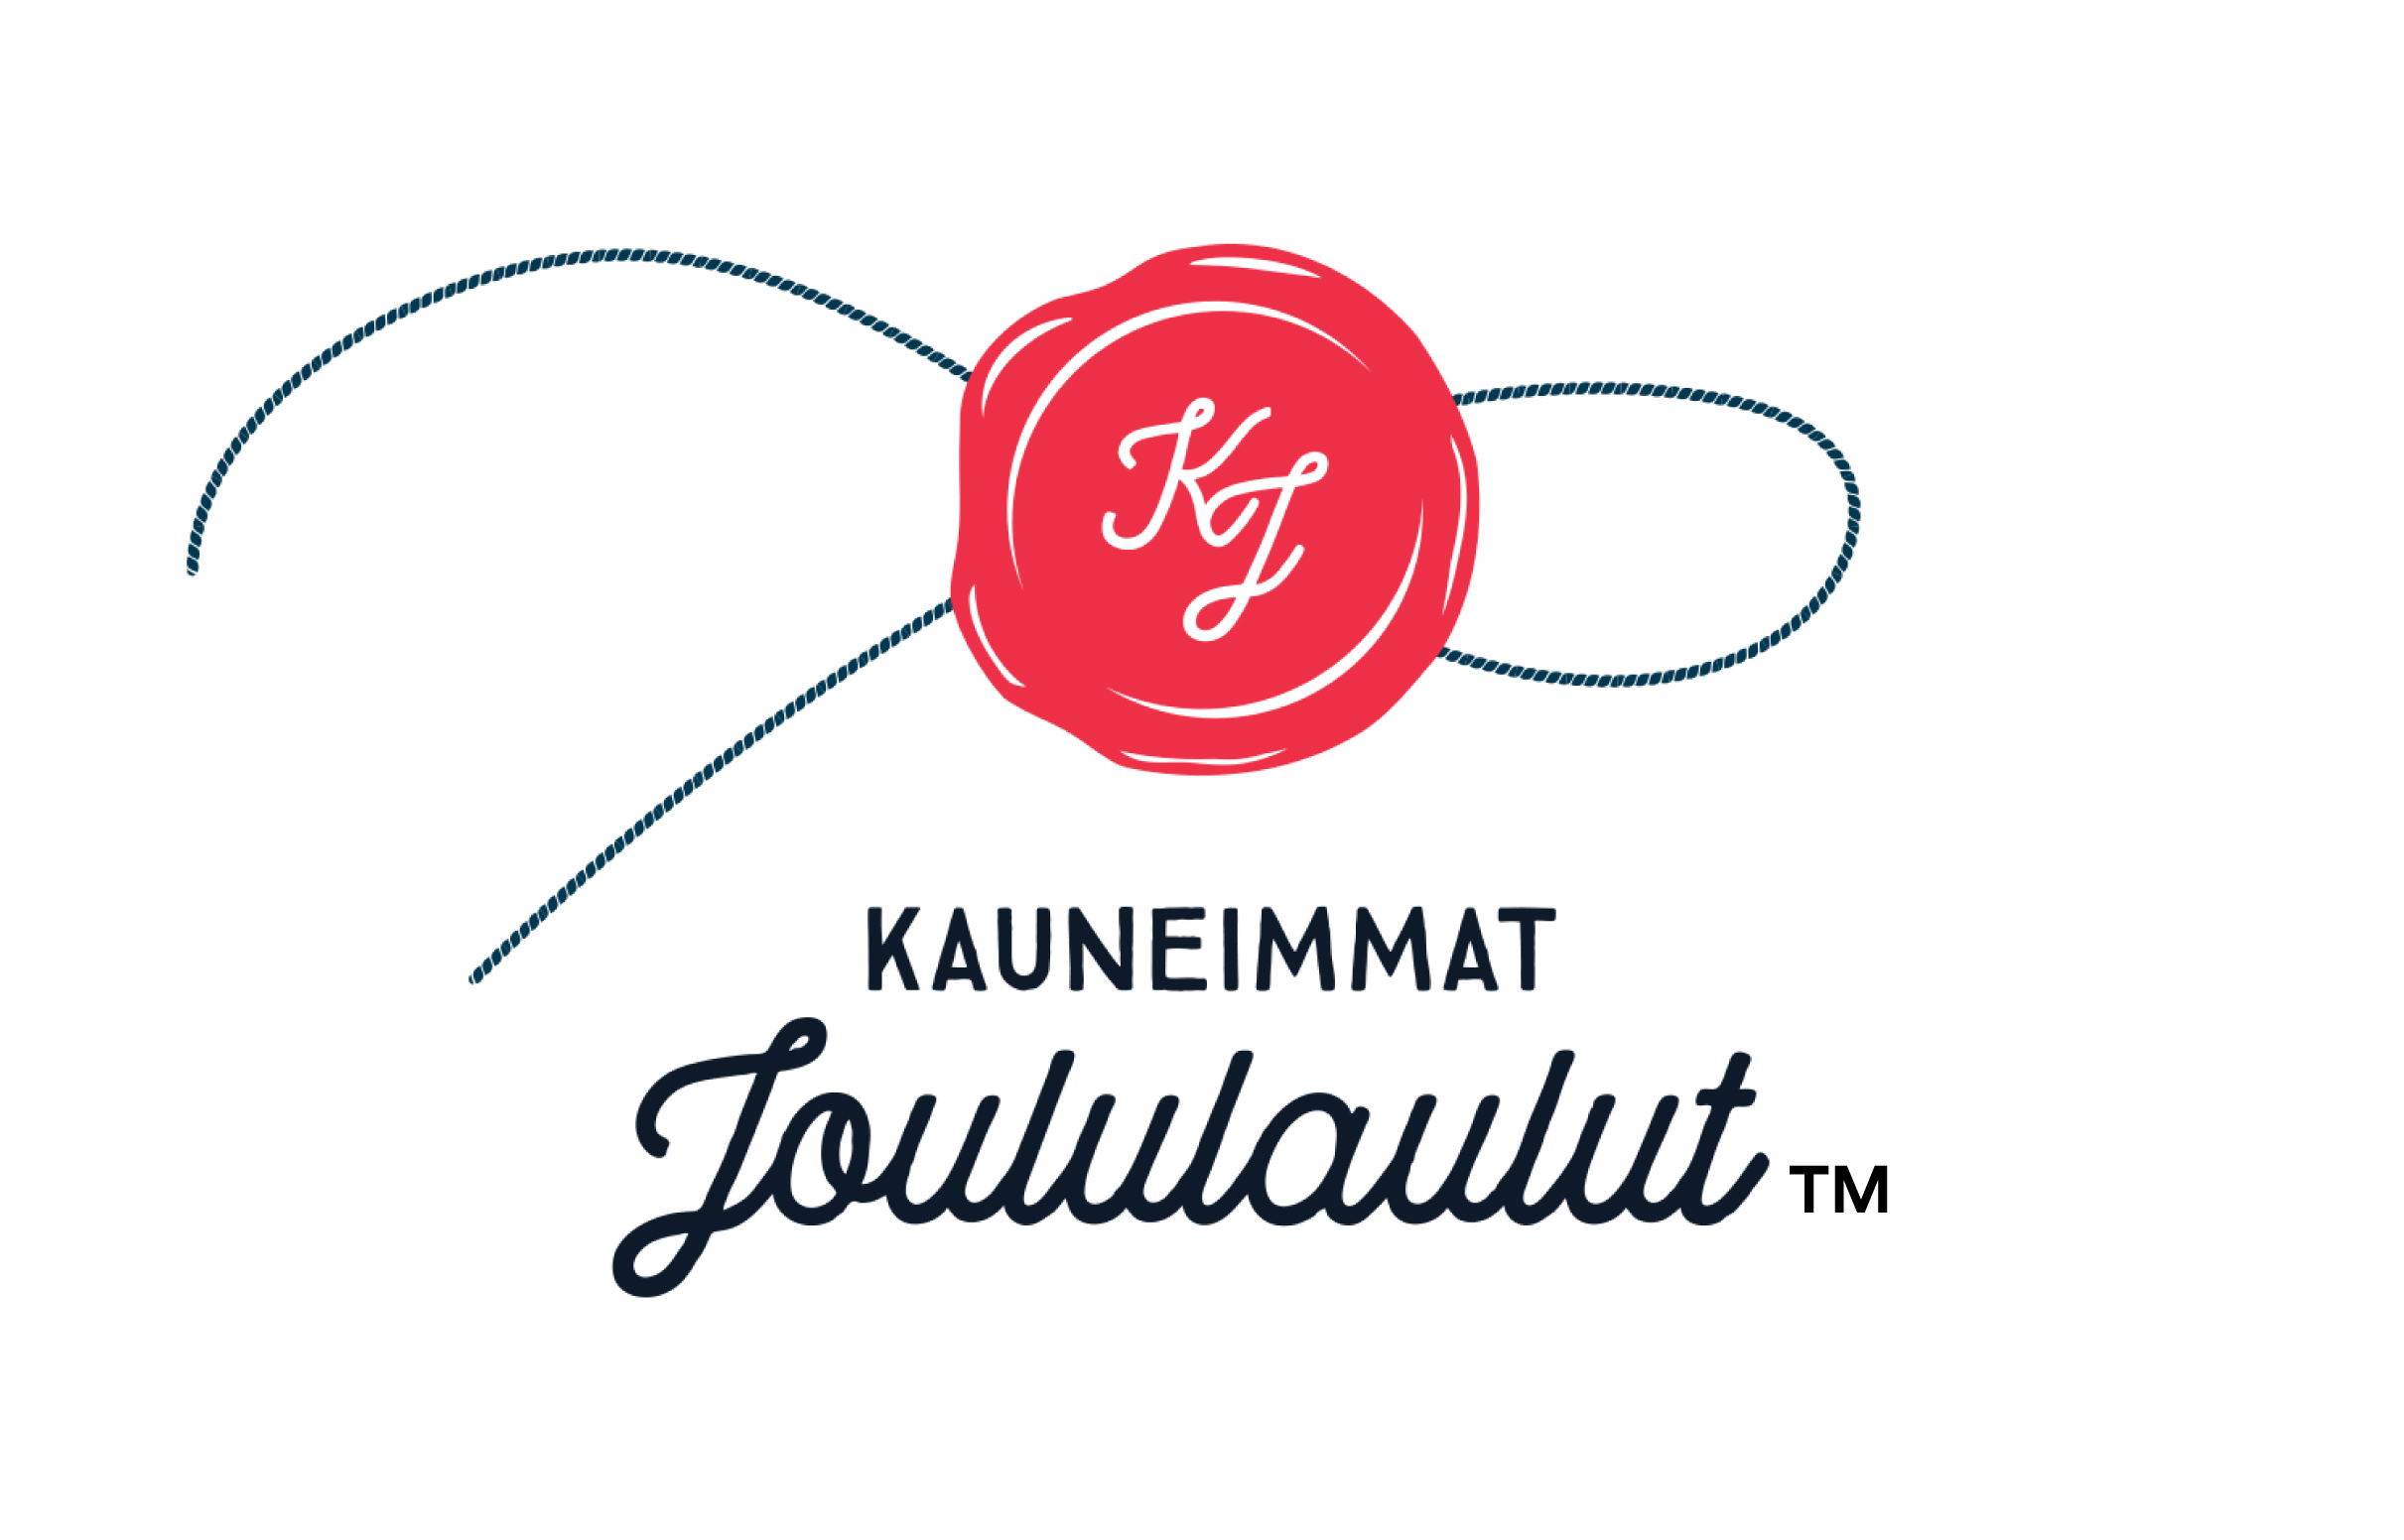 Kauneimmat joululaulut logo, jossa punainen sinetti ja kirjaimet KJ.